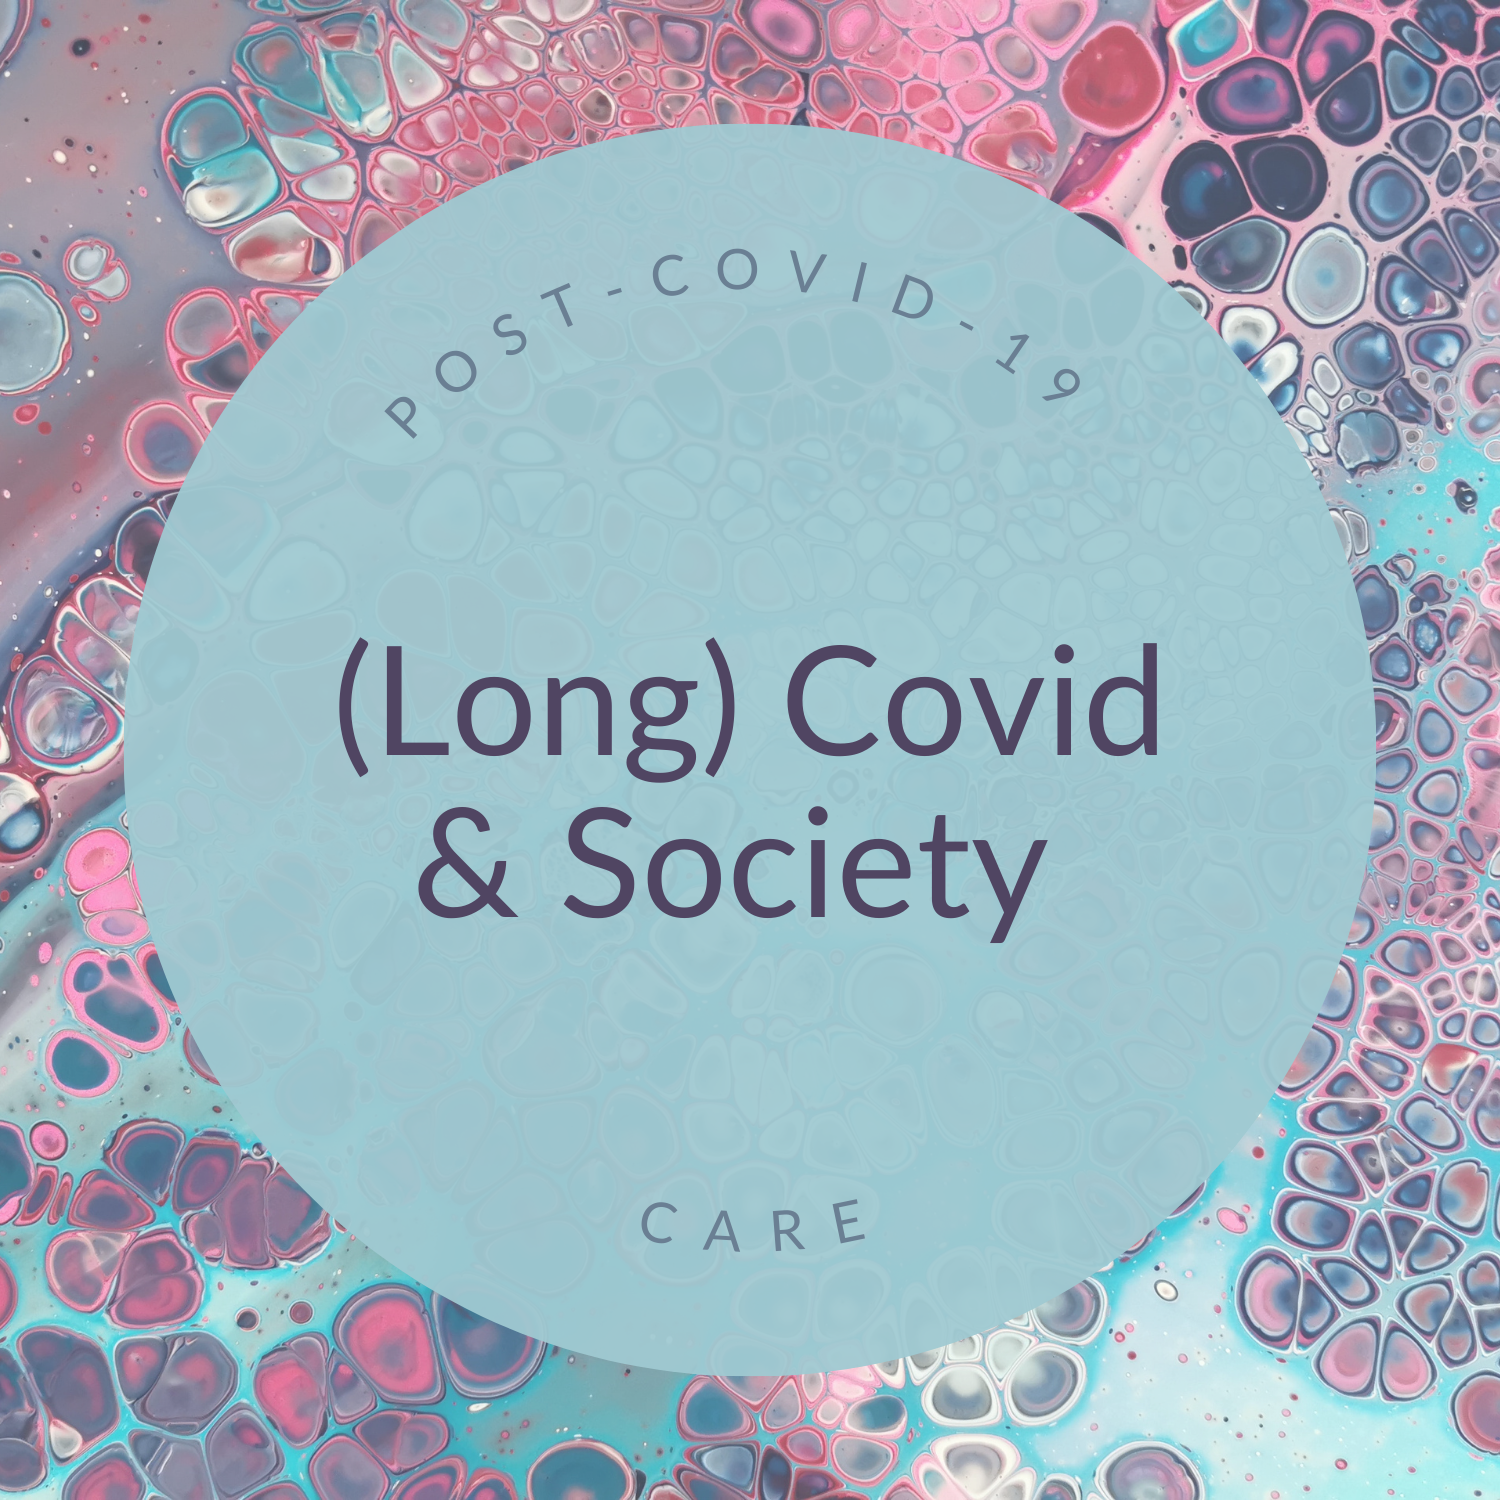 Post-Covid-19-Care: (Long) Covid & Society